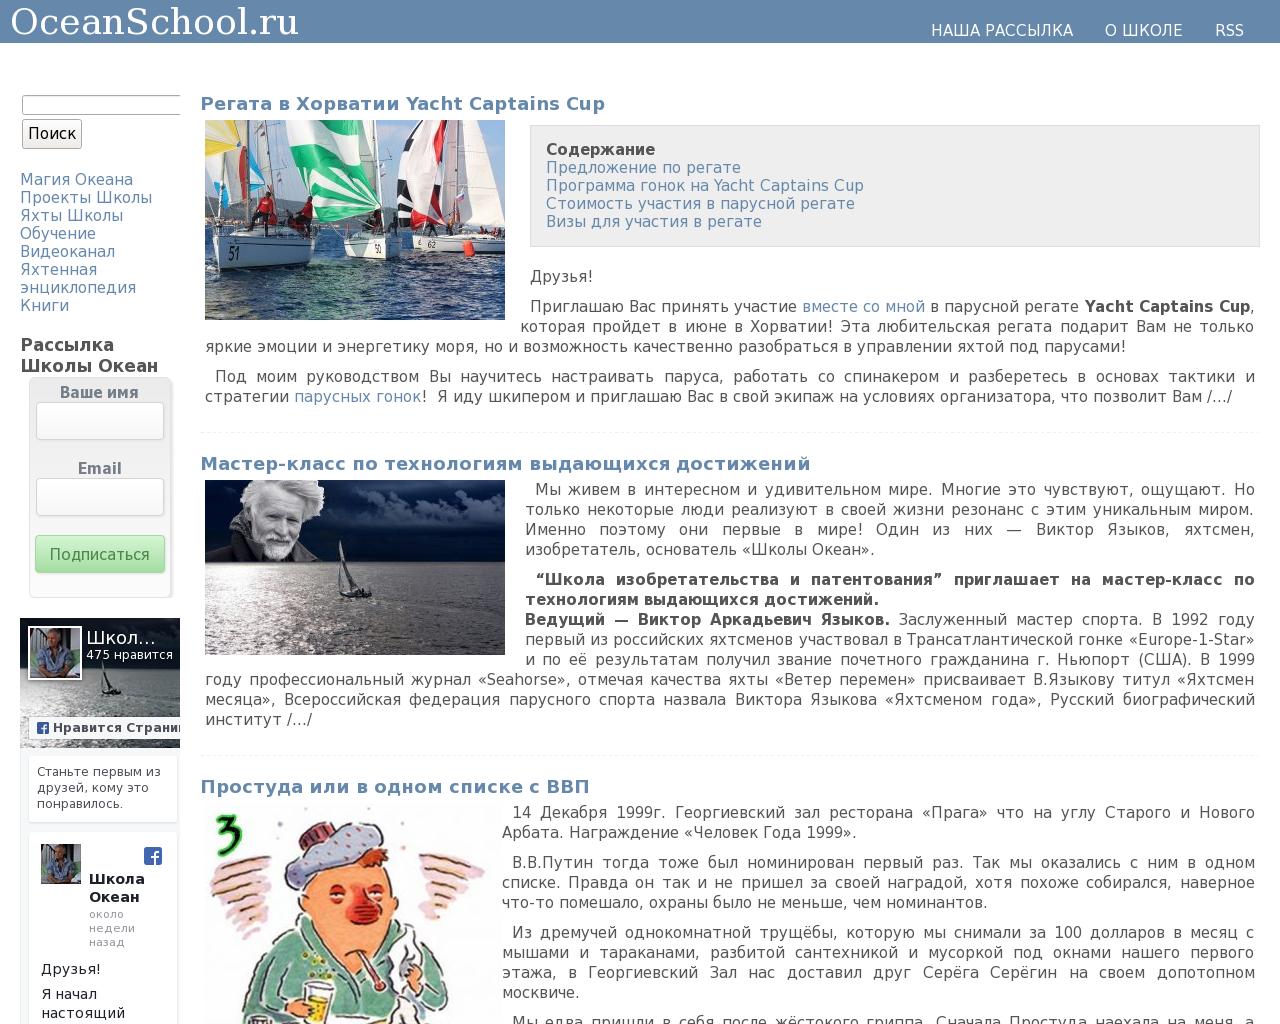 Изображение сайта oceanschool.ru в разрешении 1280x1024